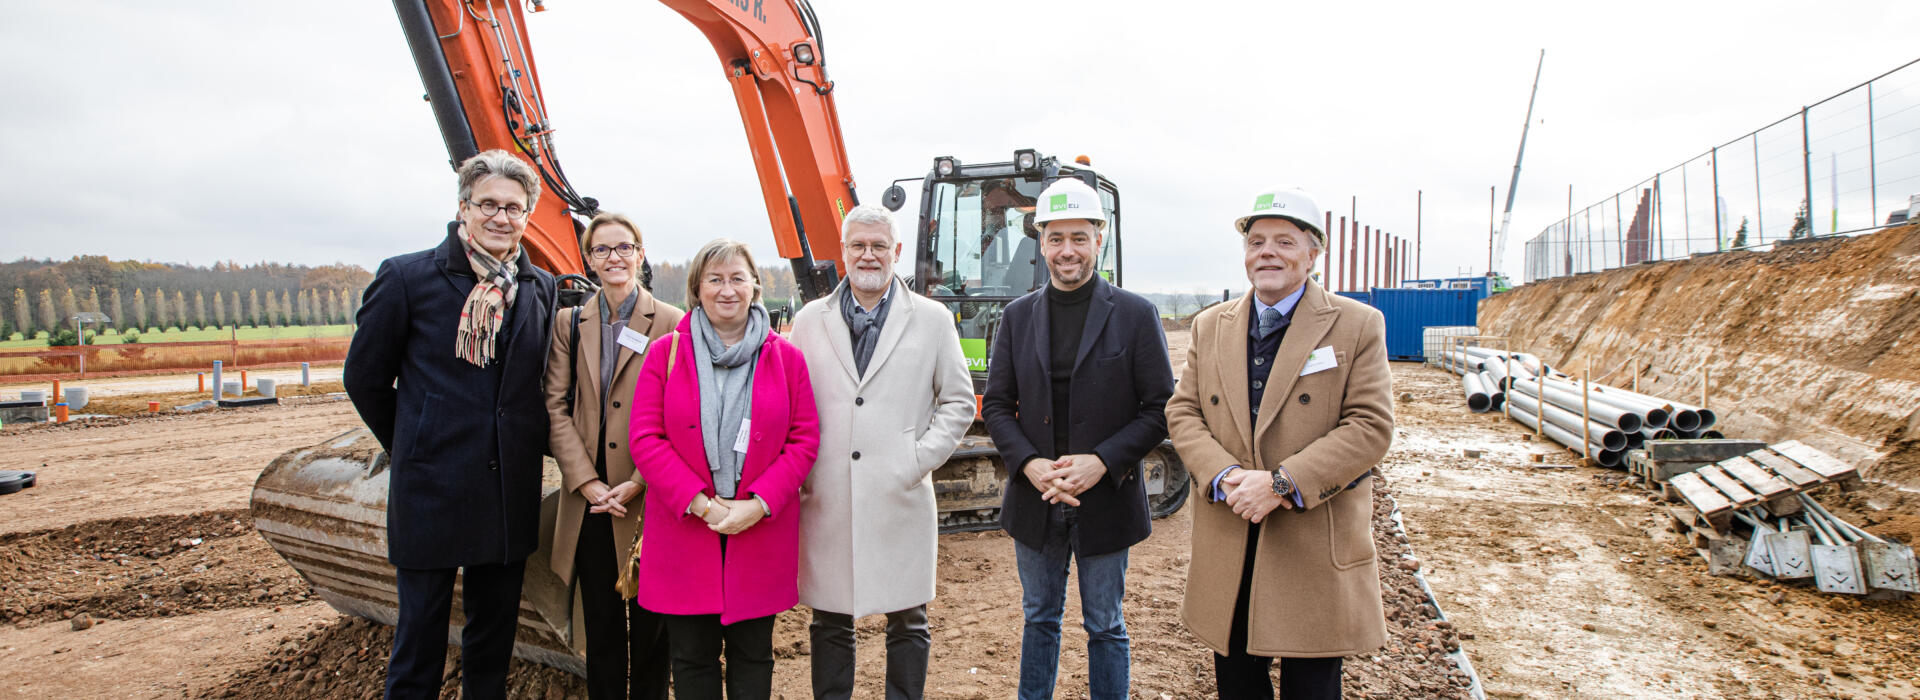 De eerste steen van Green Business Park Ecolys in Rhisnes is gelegd